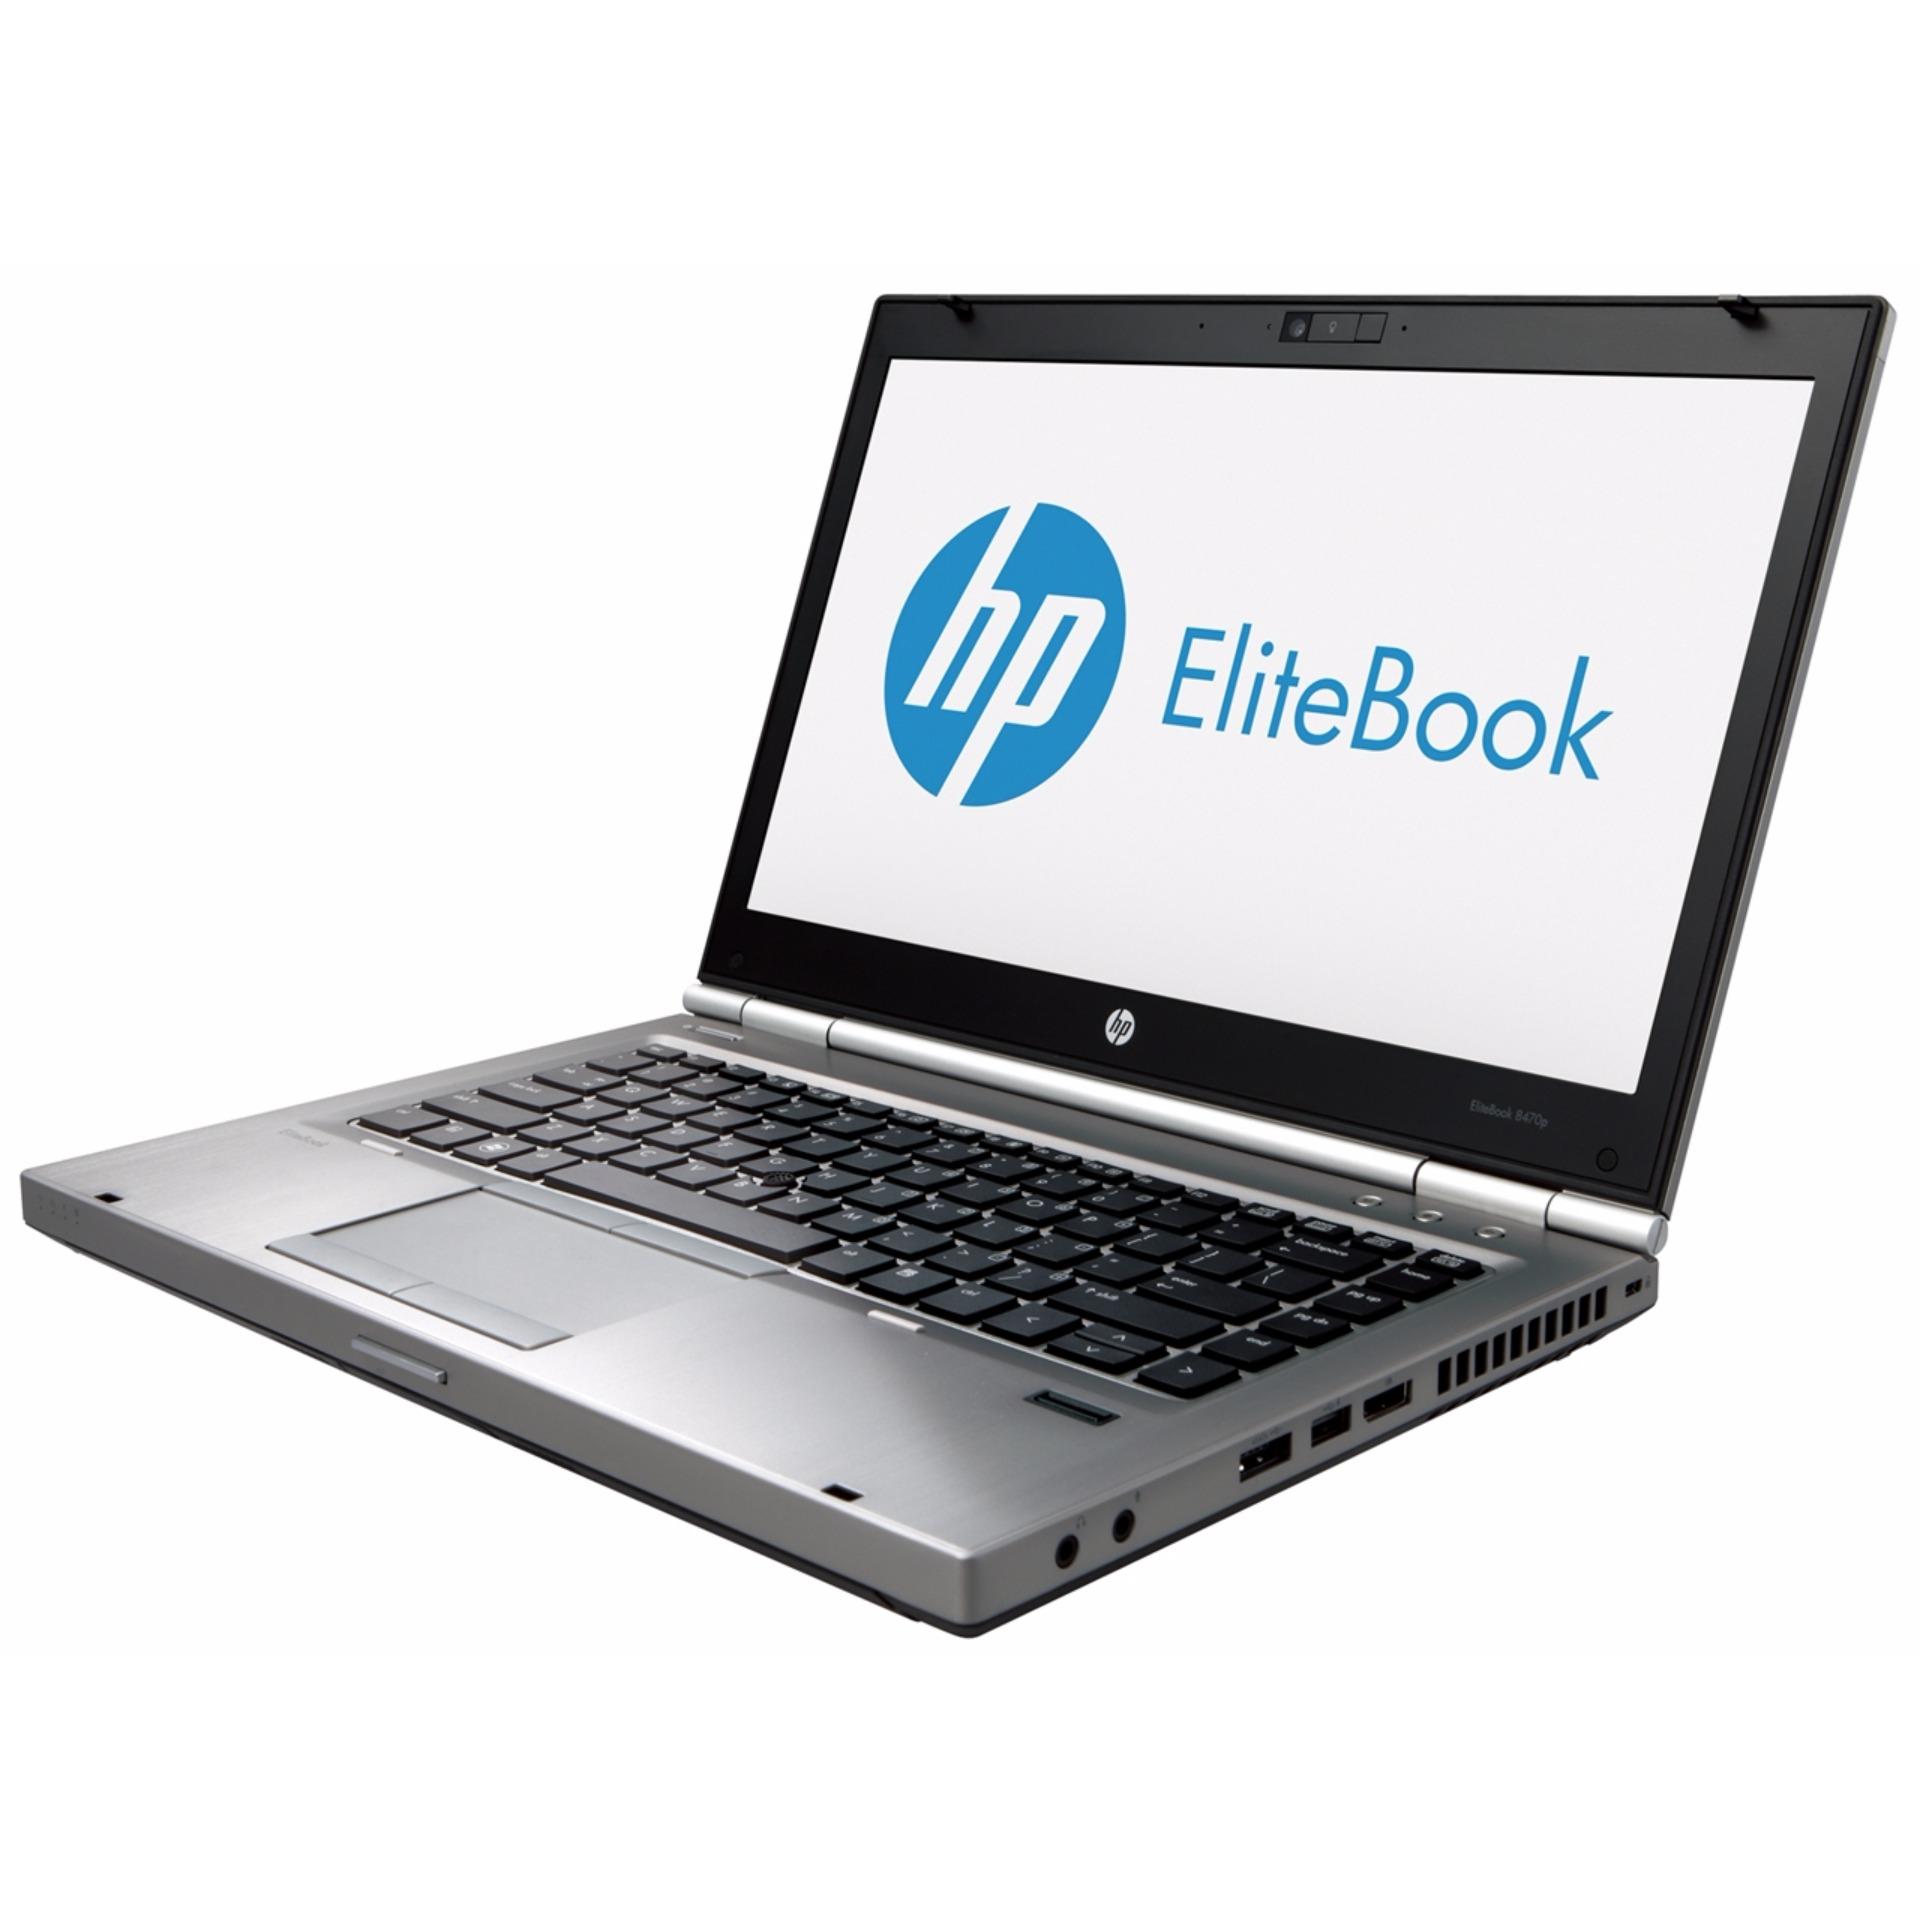 (Refurbished) HP Elitebook 8470/ Core i5 /320GB HDD/ 4GB RAM